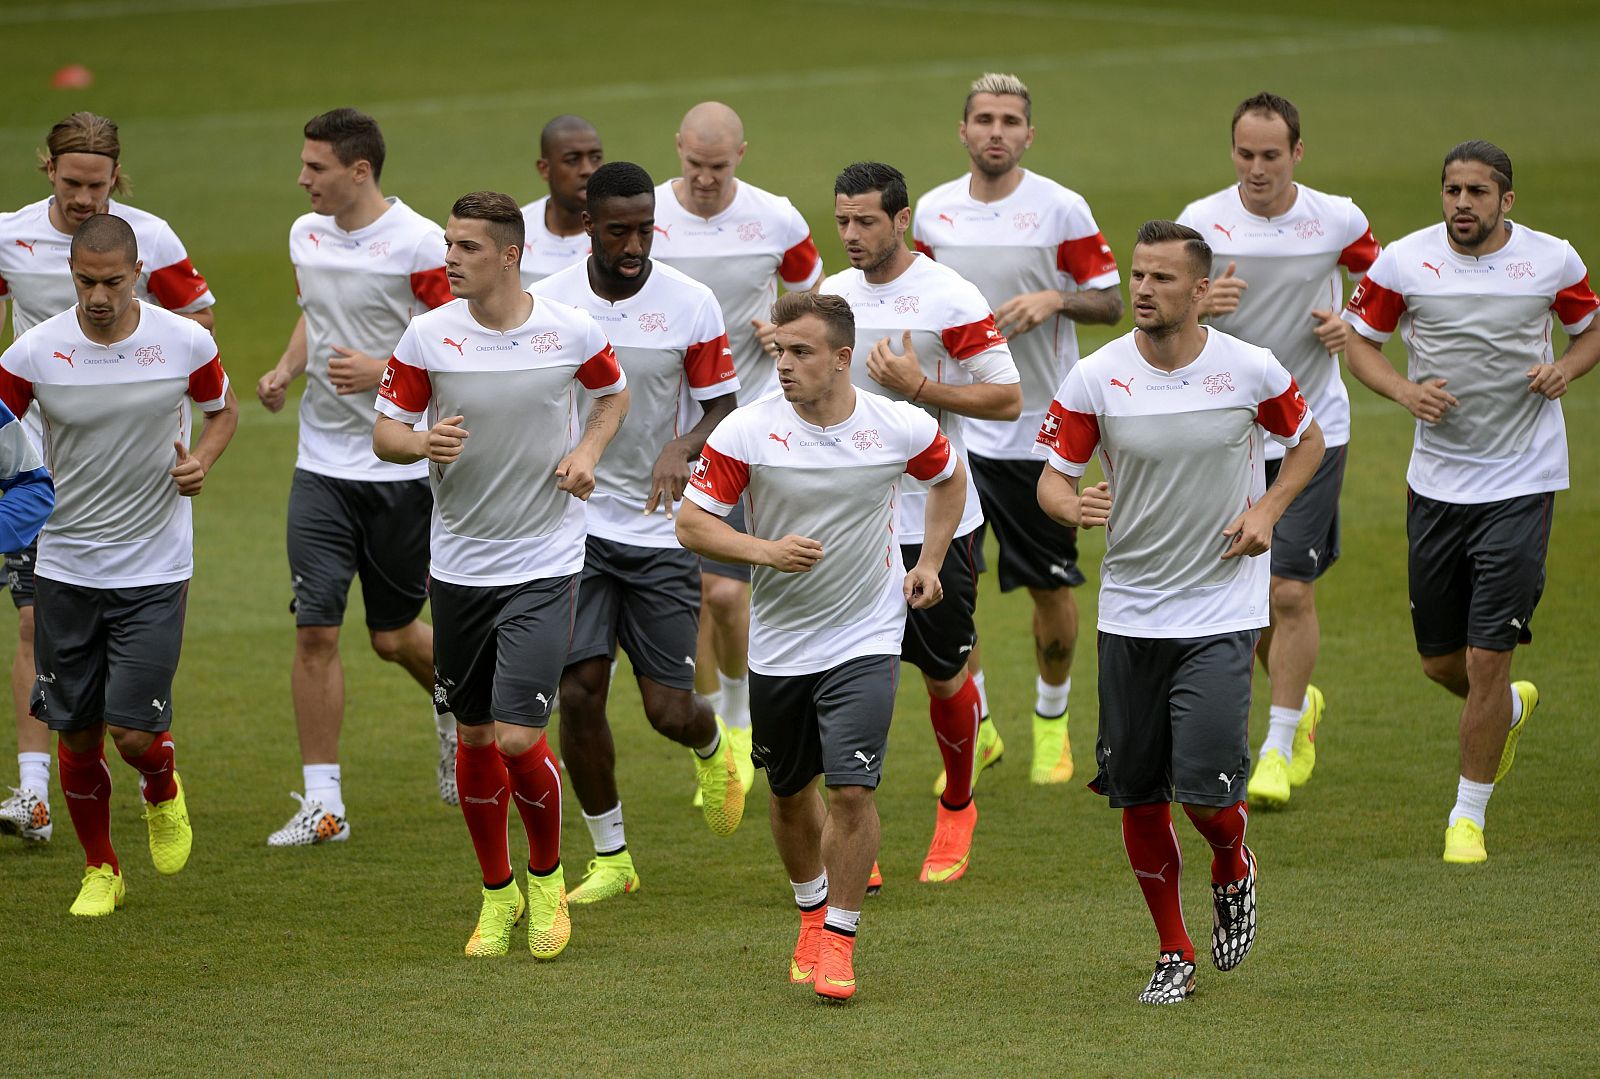 Los jugadores de la selección suiza de fútbol realizan ejercicios de calentamiento durante un entrenamiento